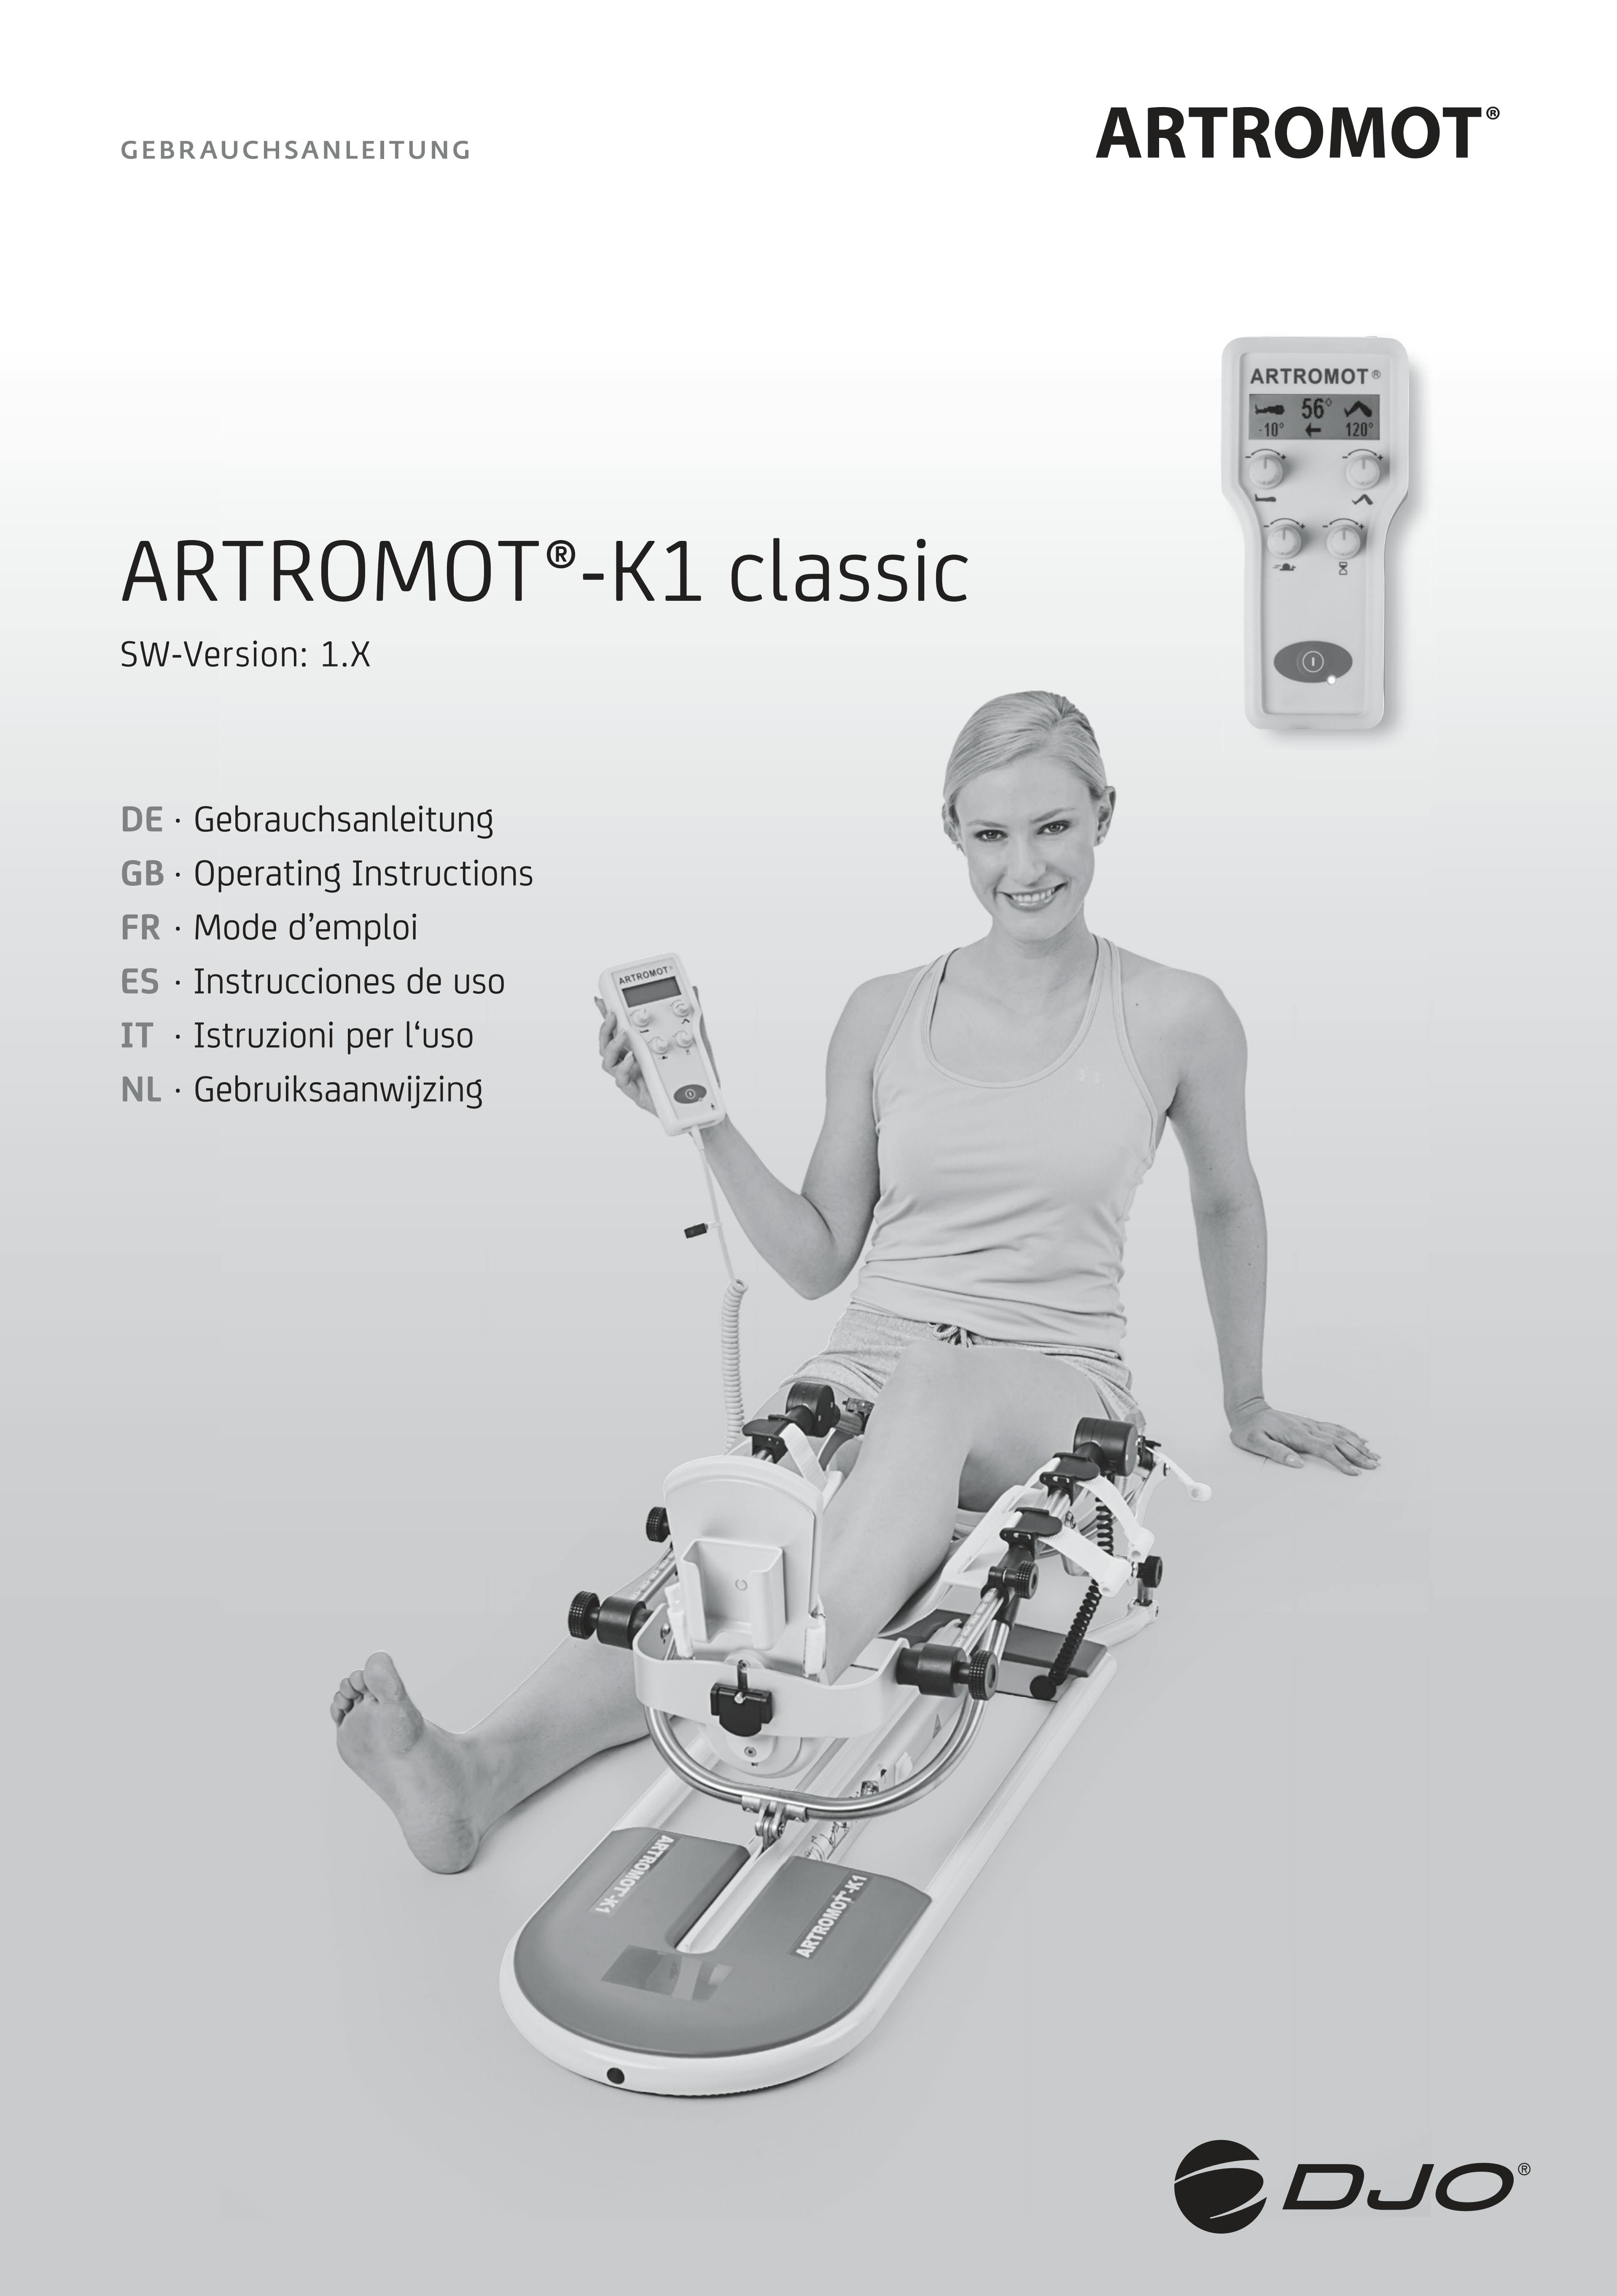 Gebrauchsanleitung_Artromot_K1_Classic_MOT-304-Rev.10-09-2020.pdf